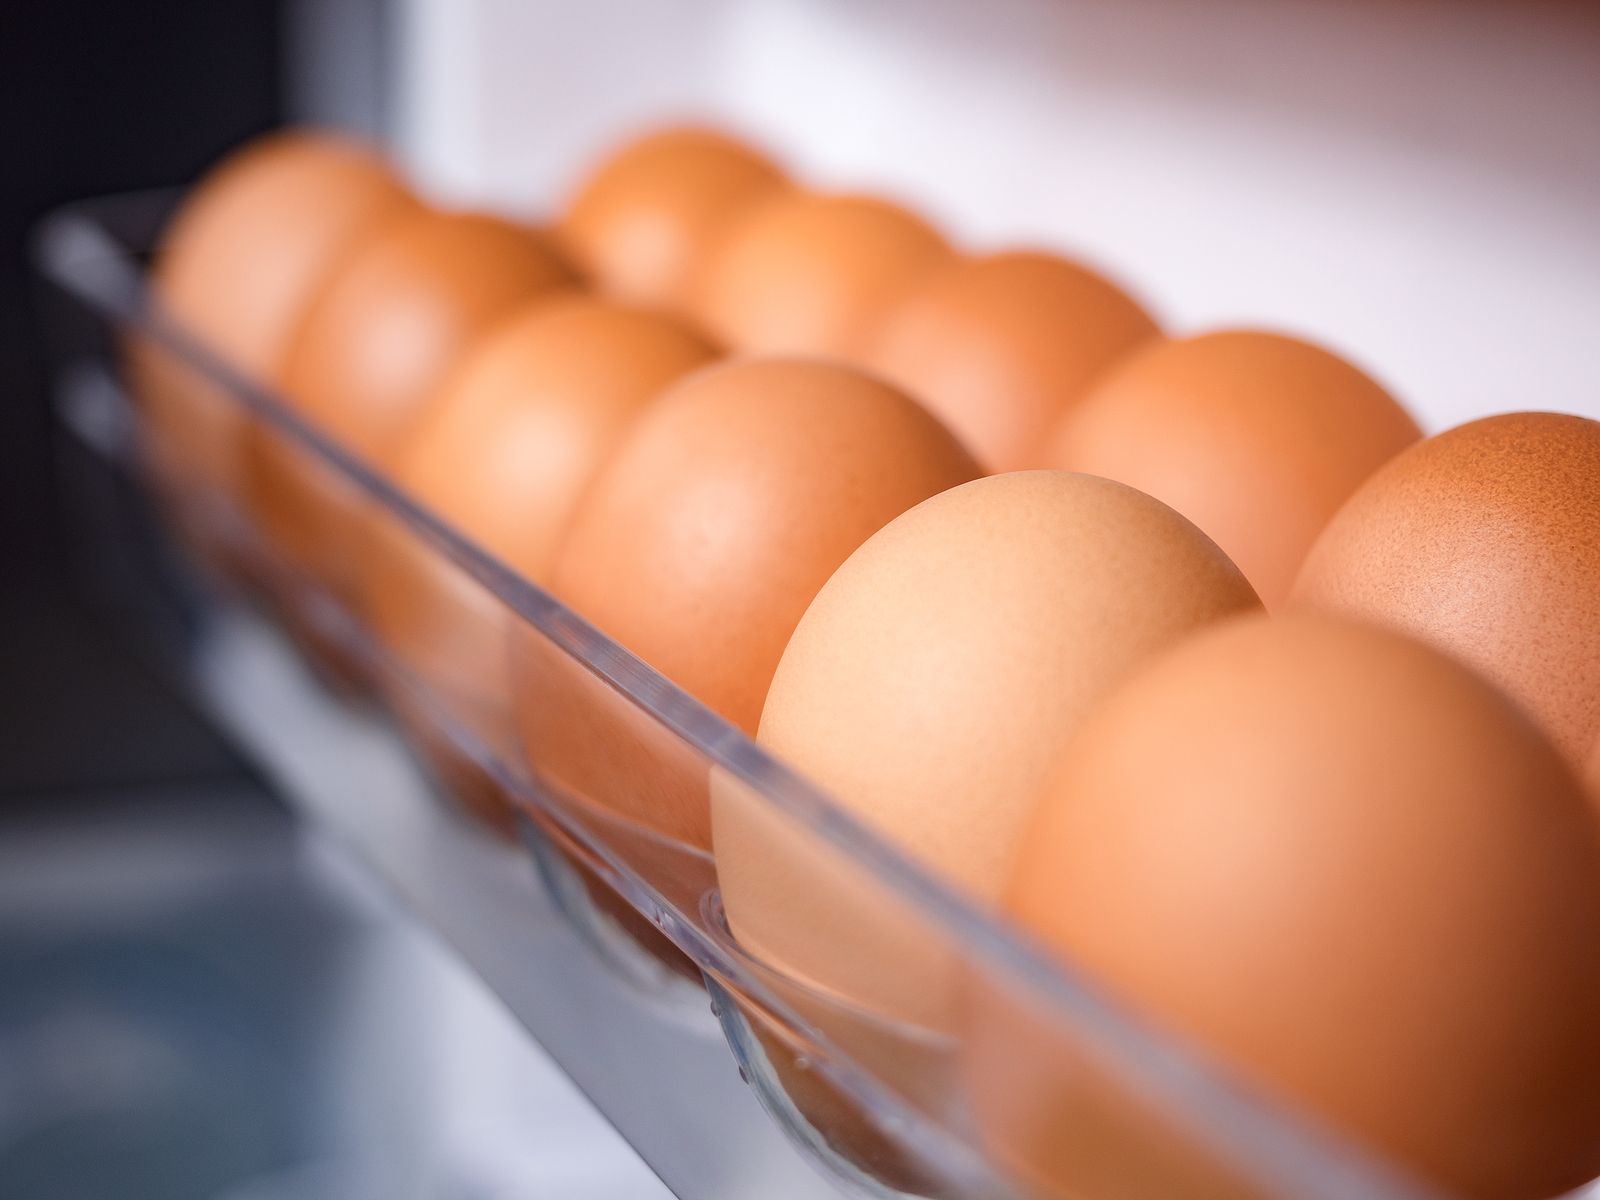 Los huevos, ¿mejor dentro o fuera de la nevera? 